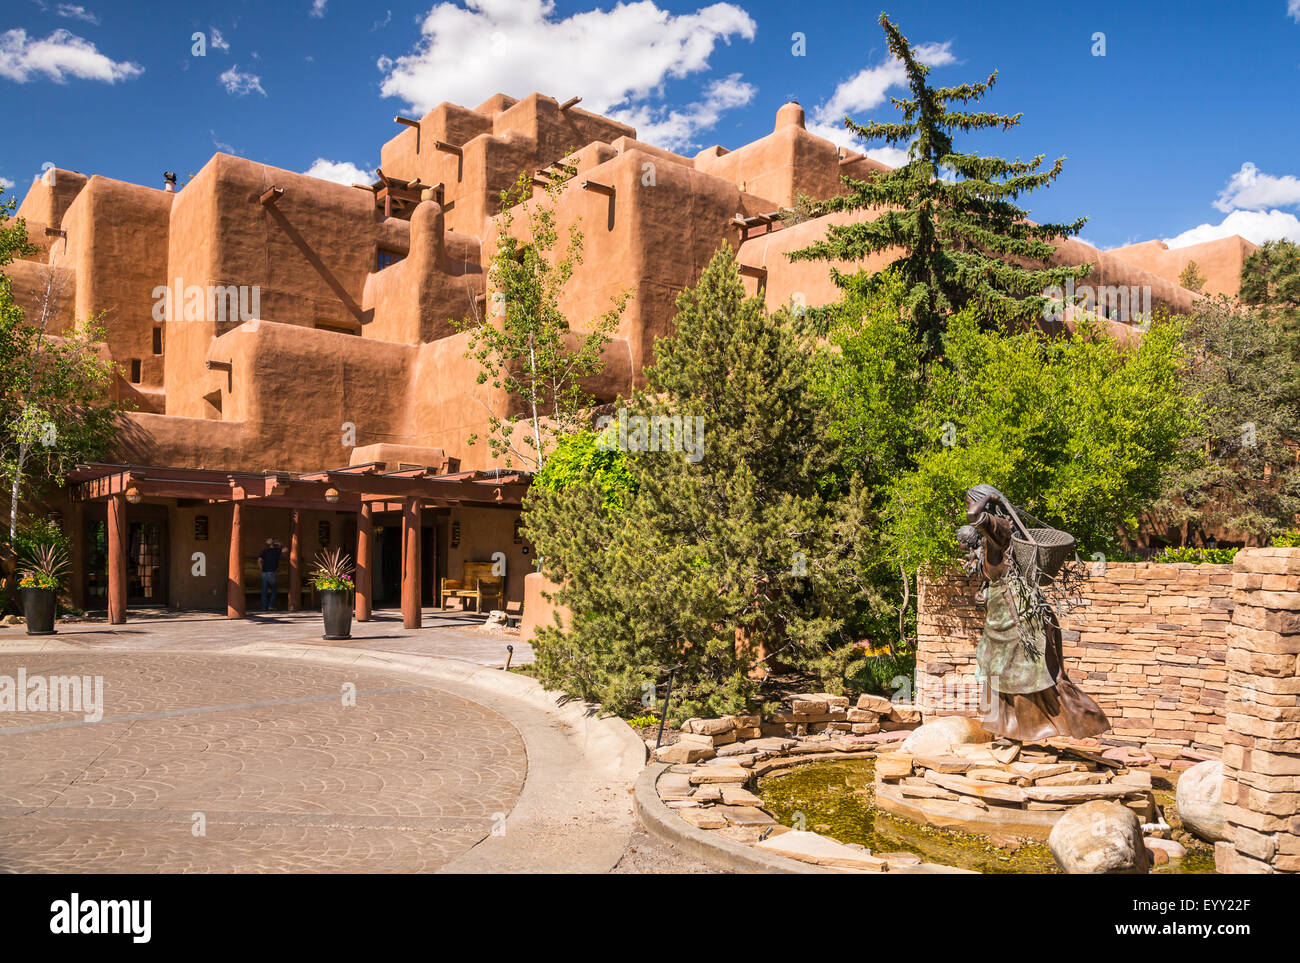 Das Inn and Spa im Loretto in Santa Fe, New Mexico, USA Stockfoto